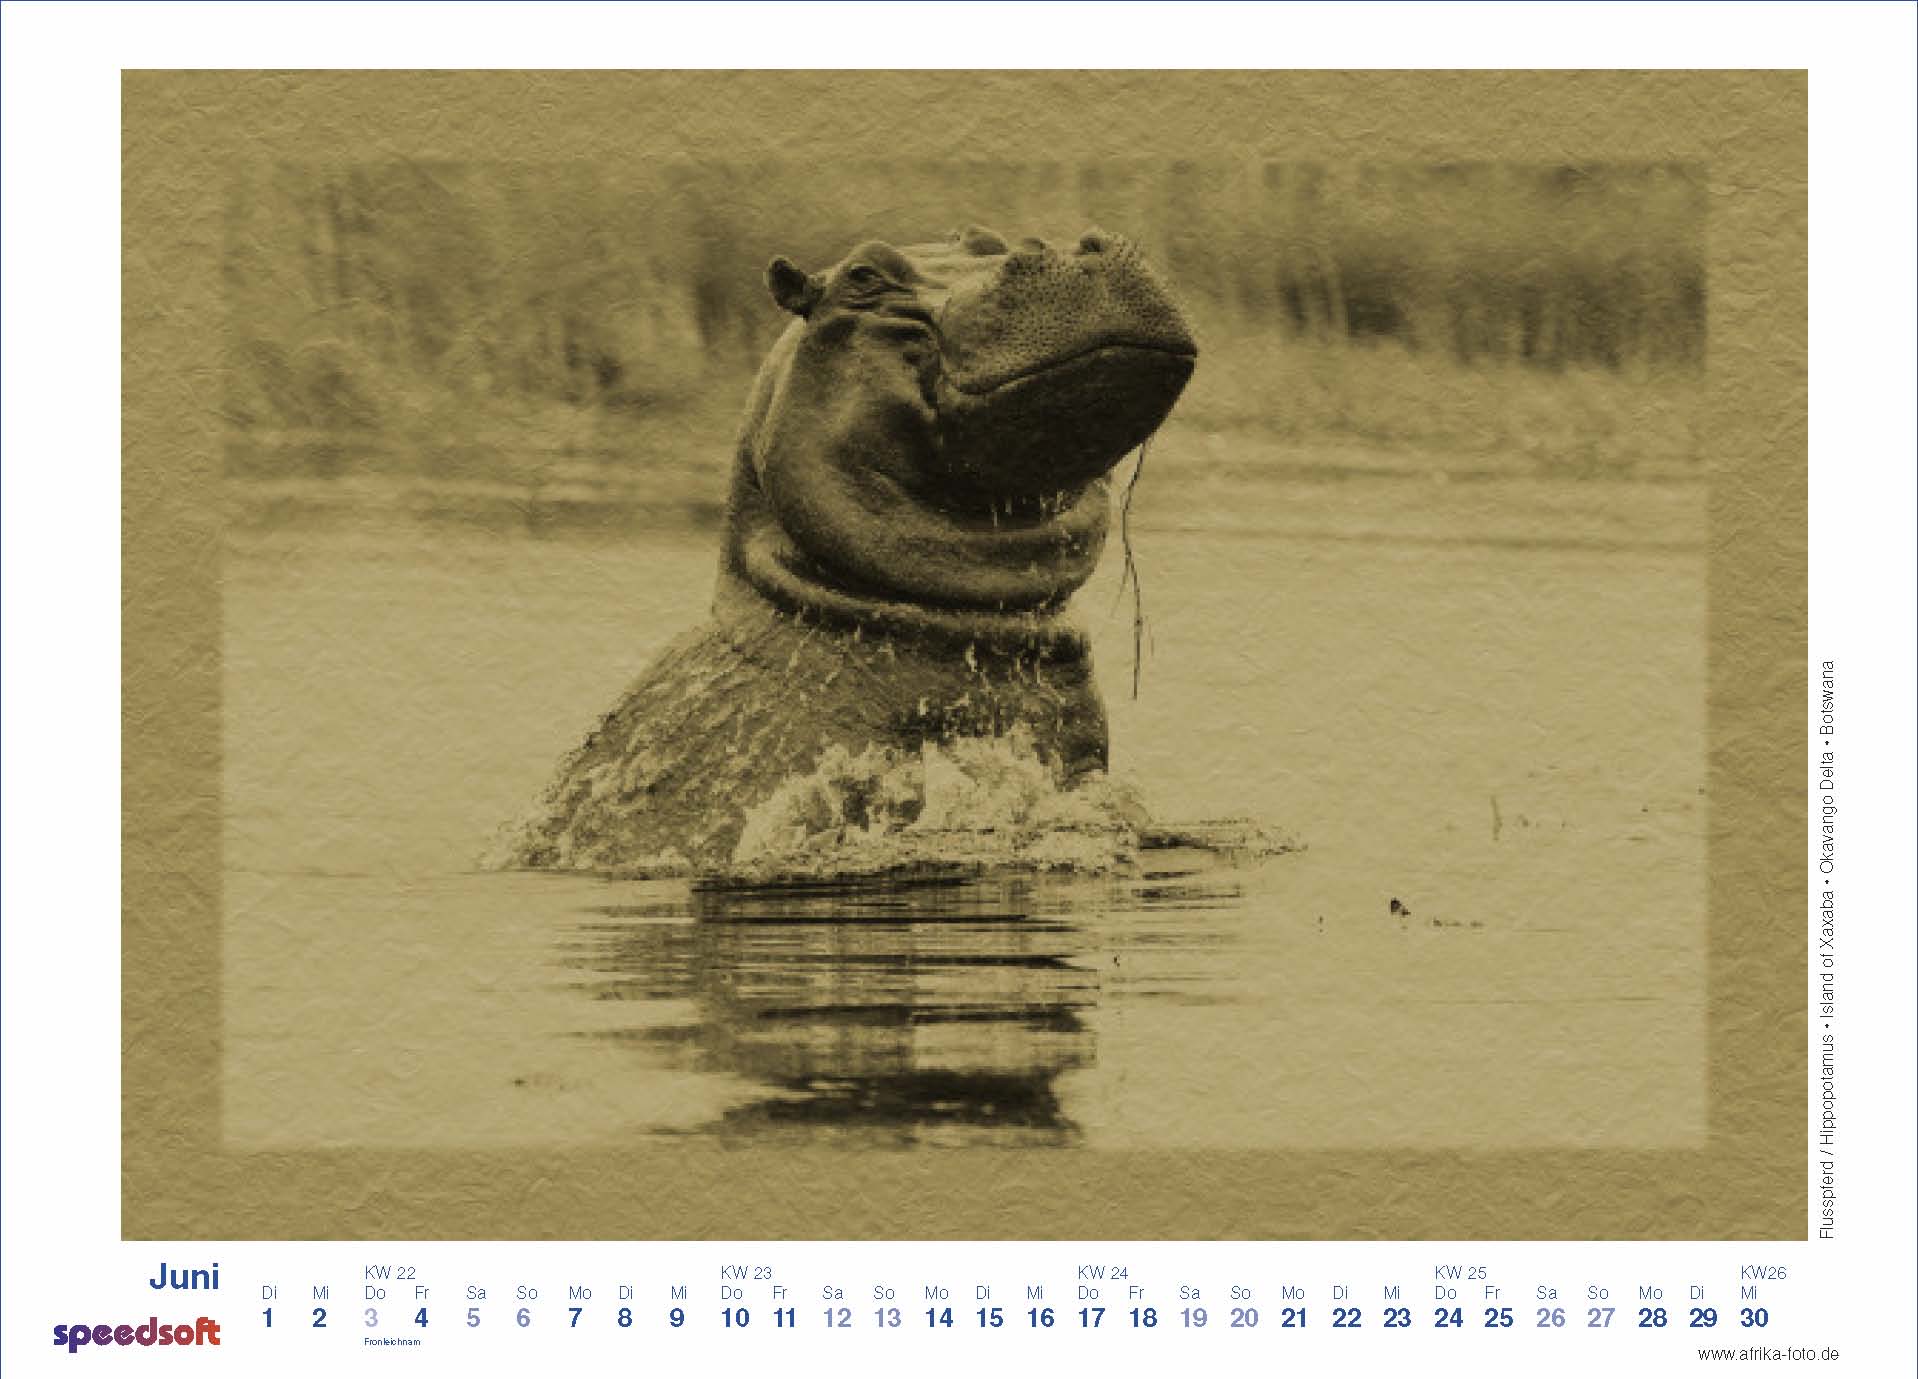 Hippopotamus | Flusspferd | Island of Xaxaba | Okavango Delta | Botswana - Kalender 2010 - Juni